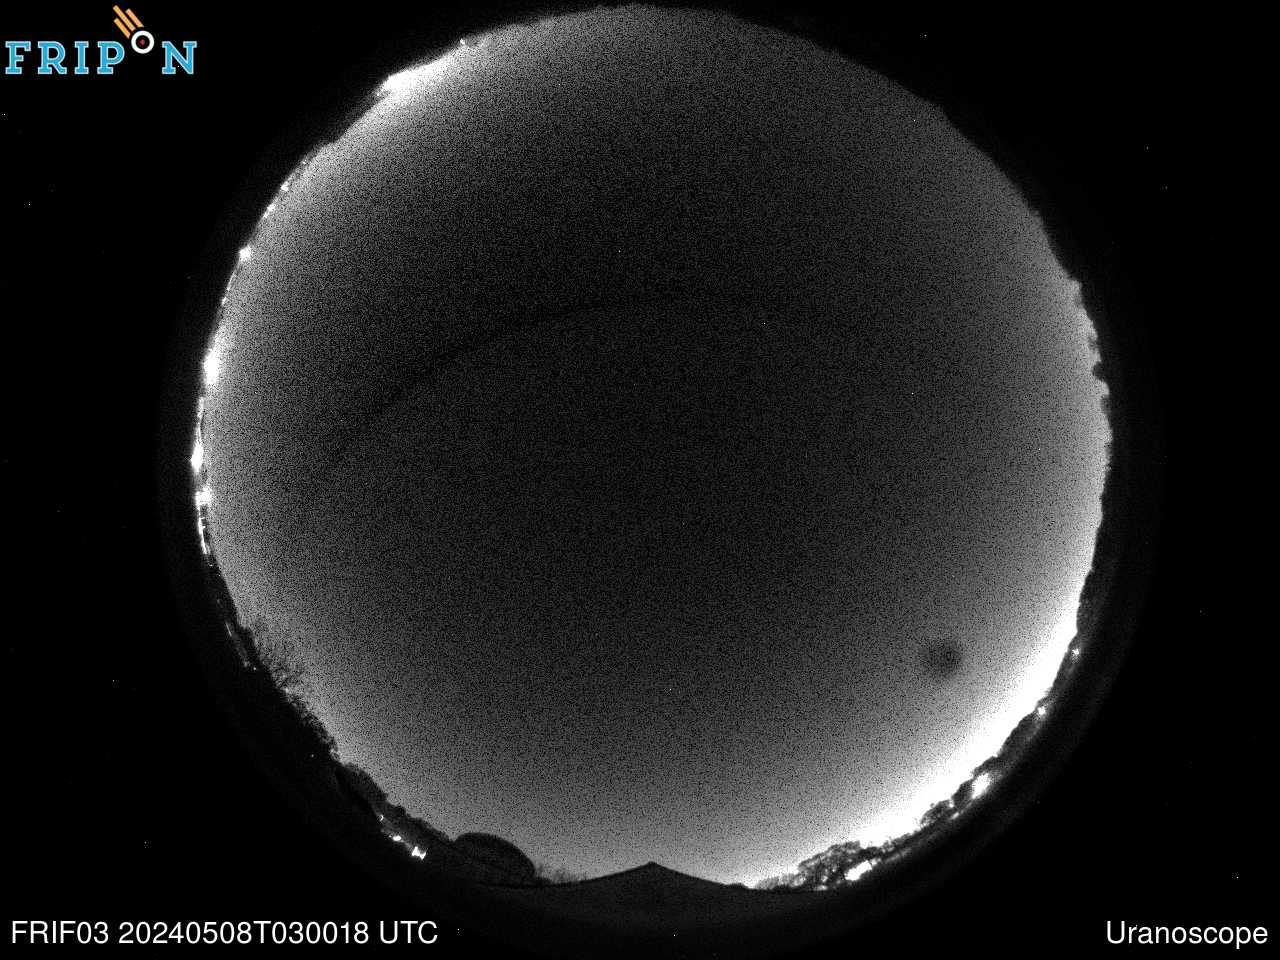 Full size image detection Uranoscope (FRIF03) Universal Time